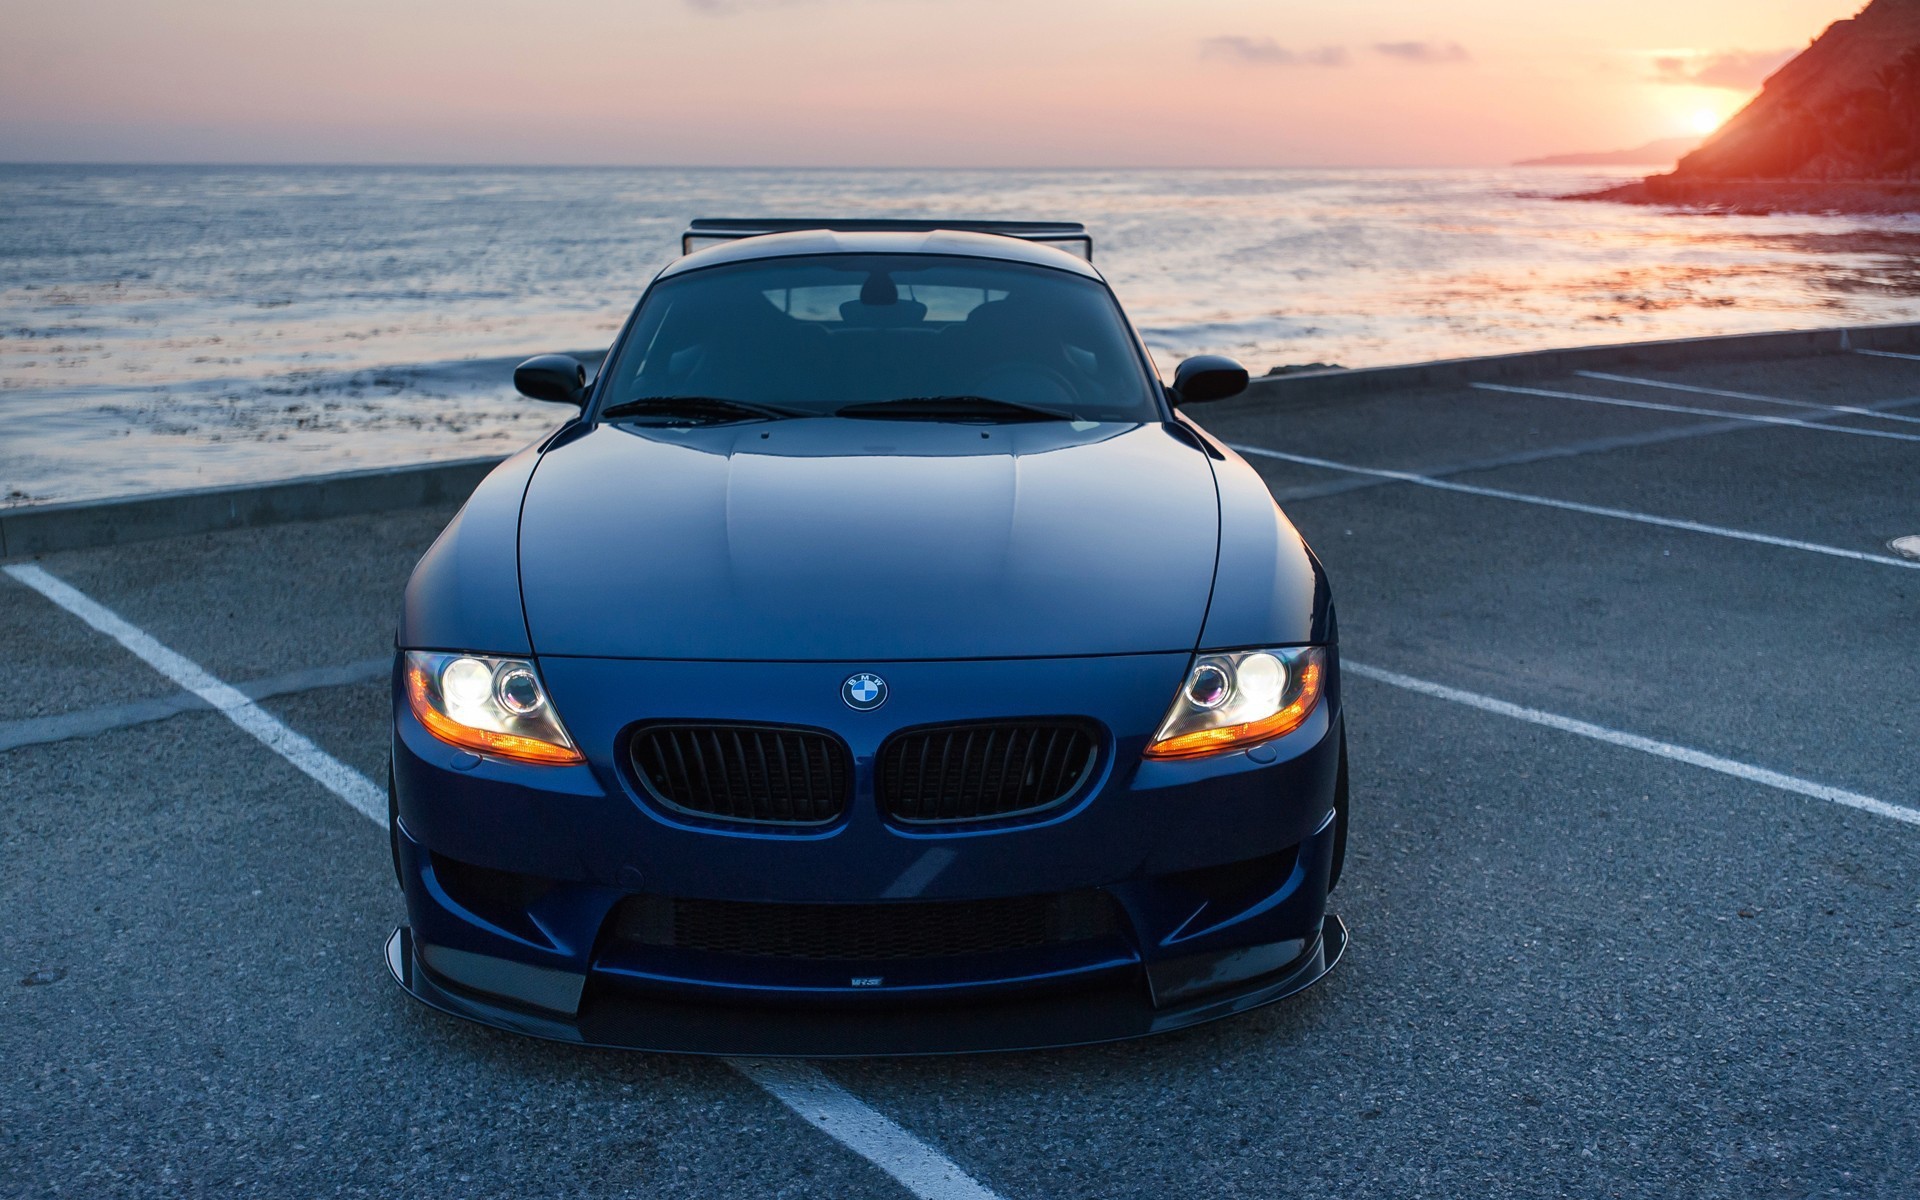 Синий BMW у морского побережья